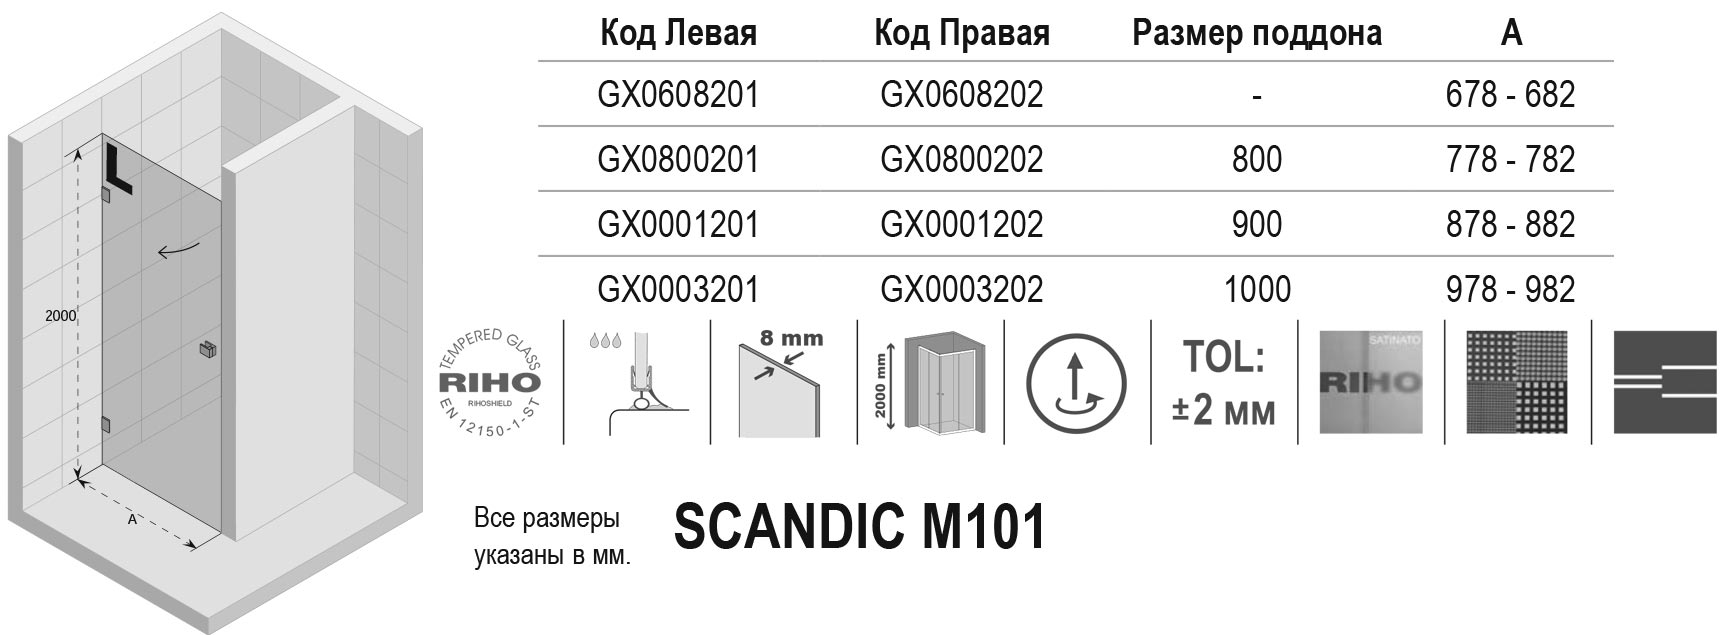 Чертёж Riho Scandic M101 GX0800202